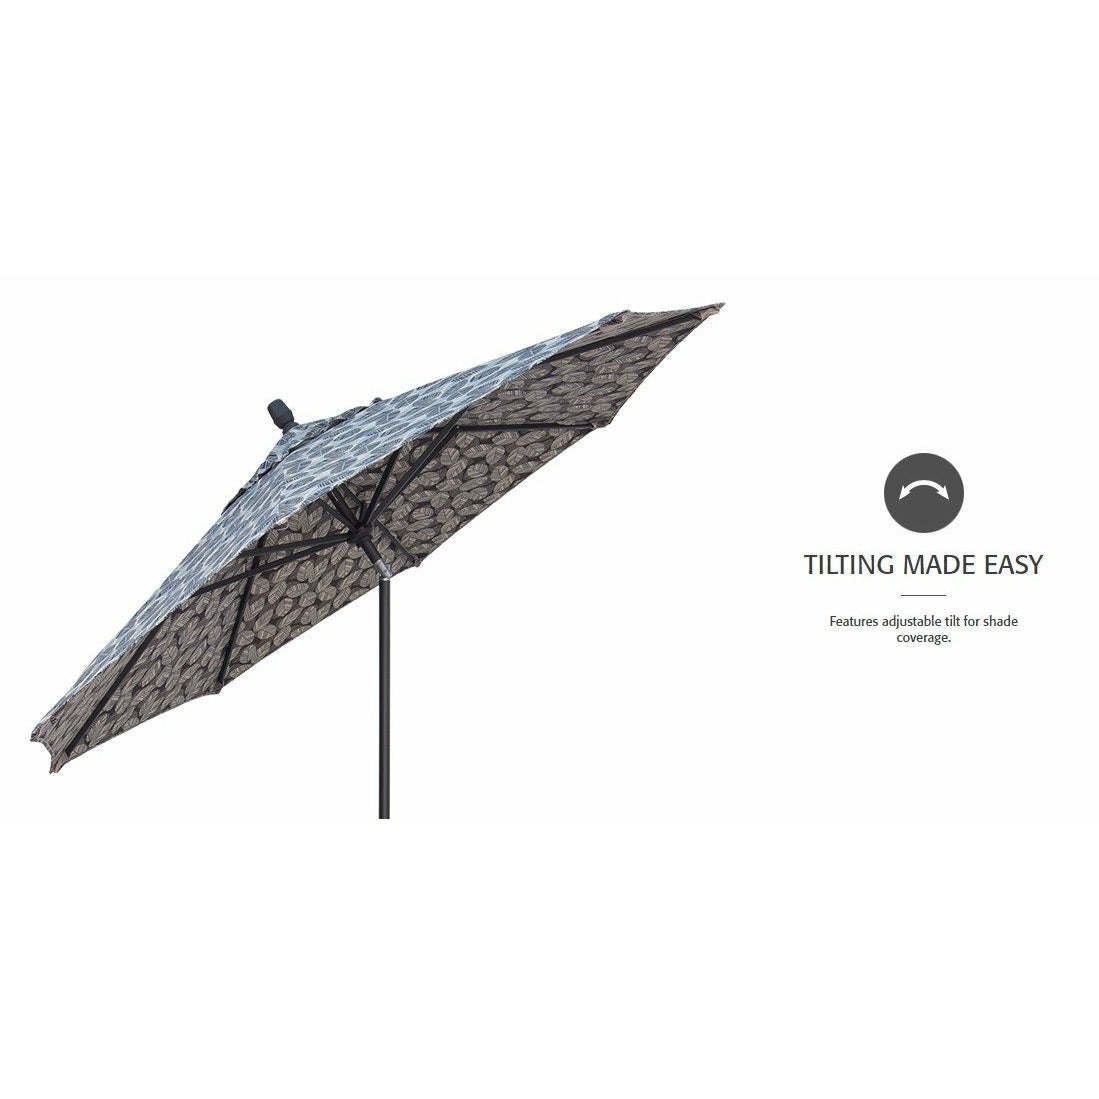 TREASURE GARDEN Market Aluminum 9' Octagon Collar Tilt Crank Lift Umbrella